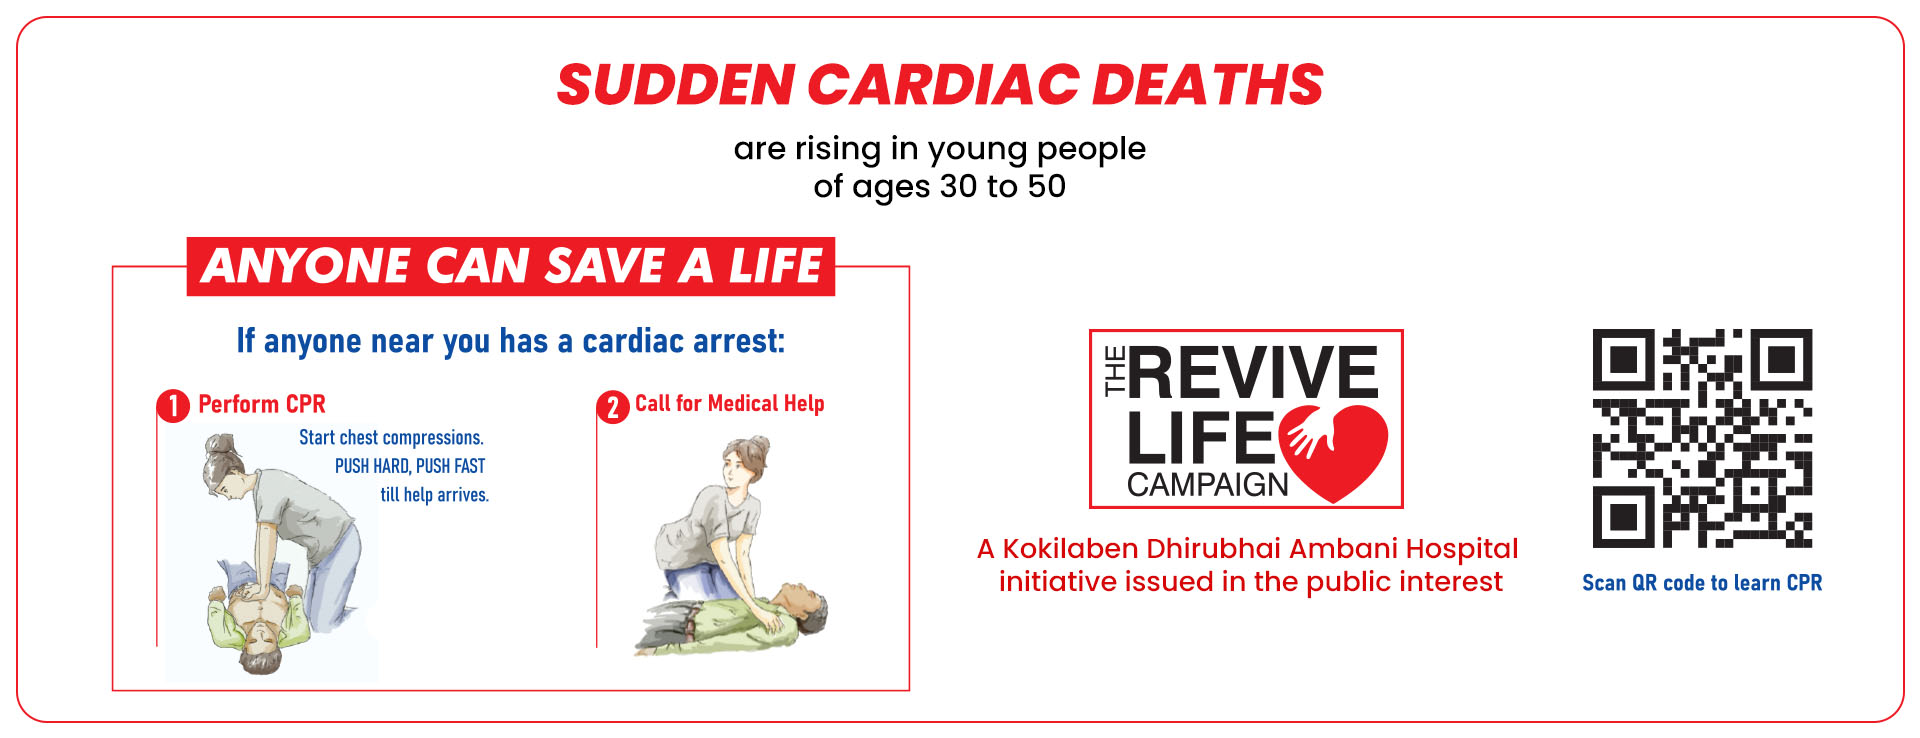 Sudden cardiac deaths